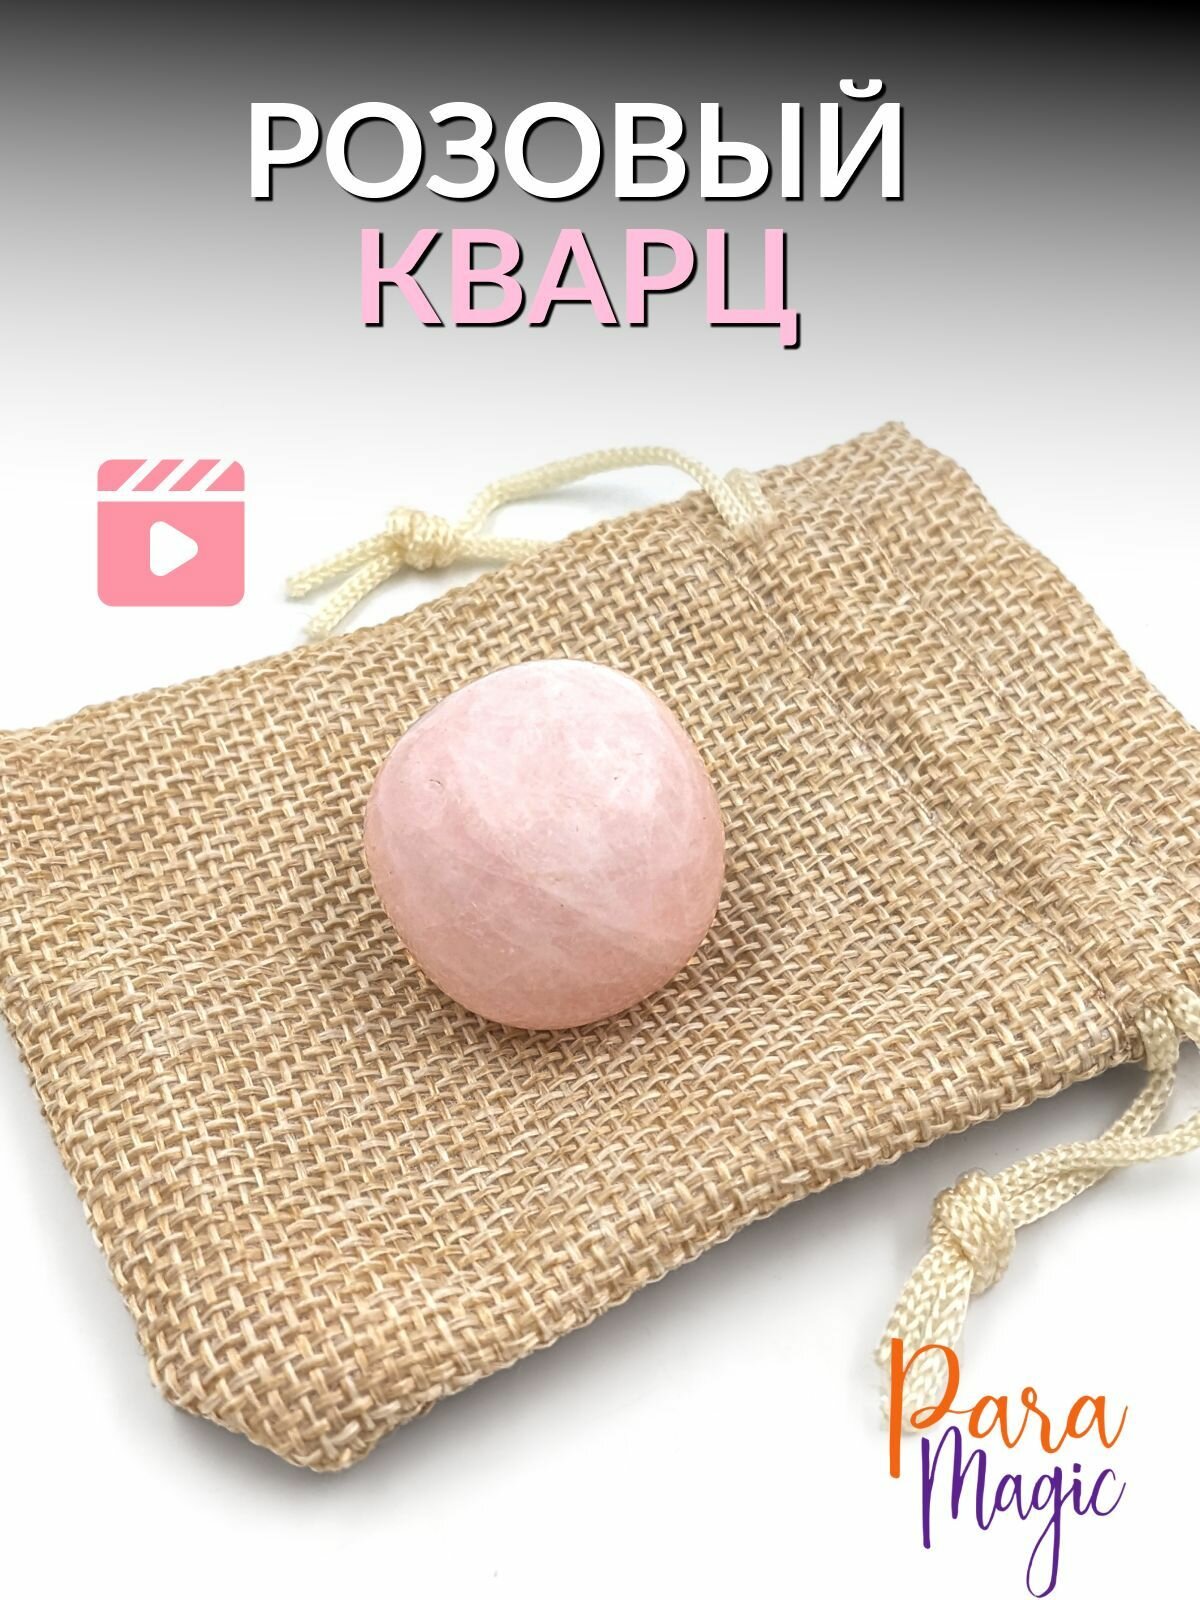 Розовый кварц, обработанный натуральный камень, 1шт, размер 2-3см.